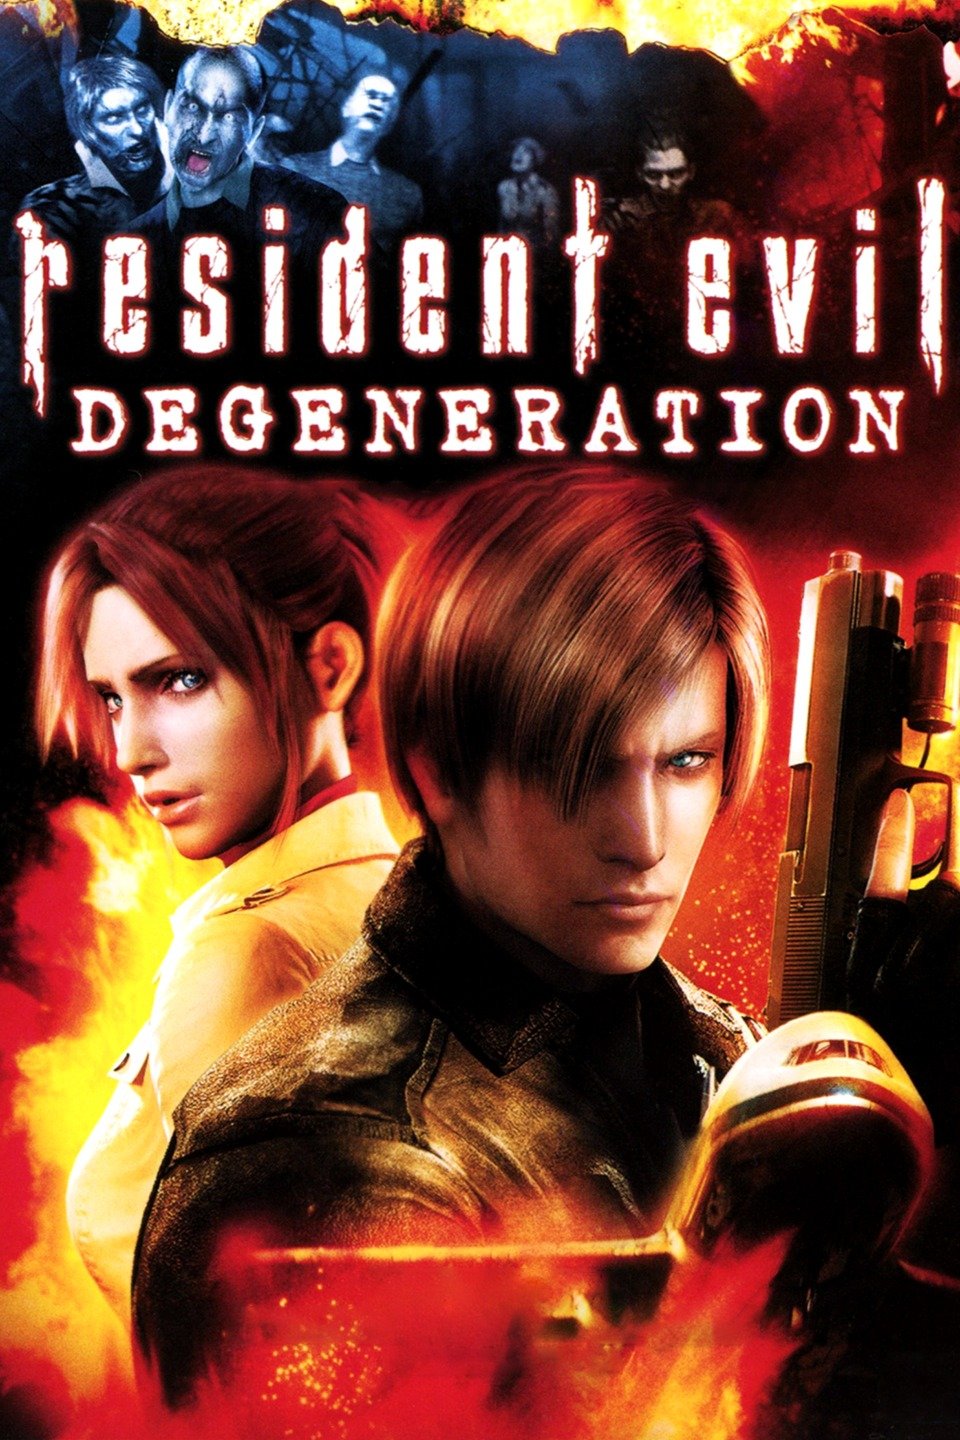 [MINI-HD] Resident Evil: Degeneration (2008) ผีชีวะ: สงครามปลุกพันธุ์ไวรัสมฤตยู [1080p] [พากย์ไทย 2.0 + เสียงอังกฤษ 5.1] [บรรยายไทย + อังกฤษ] [เสียงไทย + ซับไทย] [OPENLOAD]